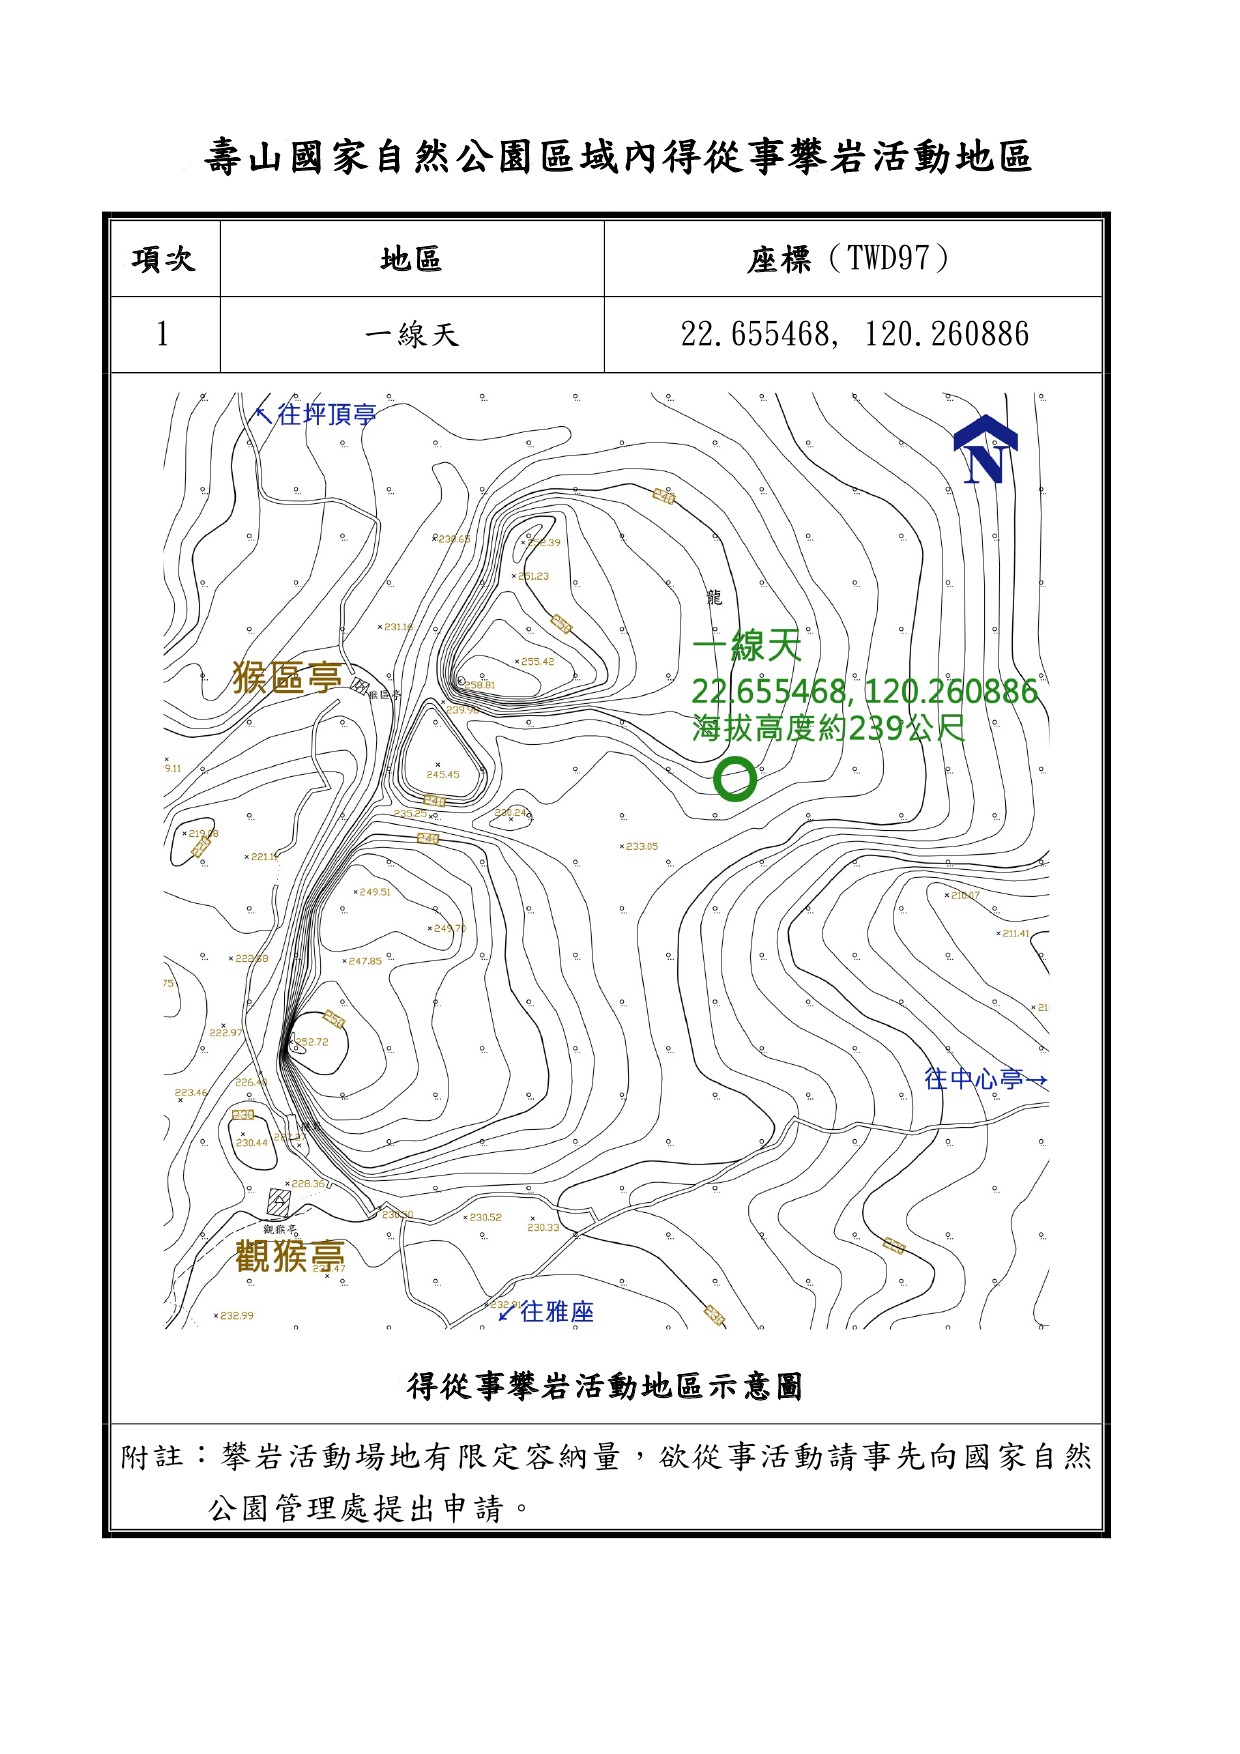 公告壽山國家自然公園區域內指定得騎乘自行車、申請探洞活動、申請從事攀岩活動等3項活動地區-5